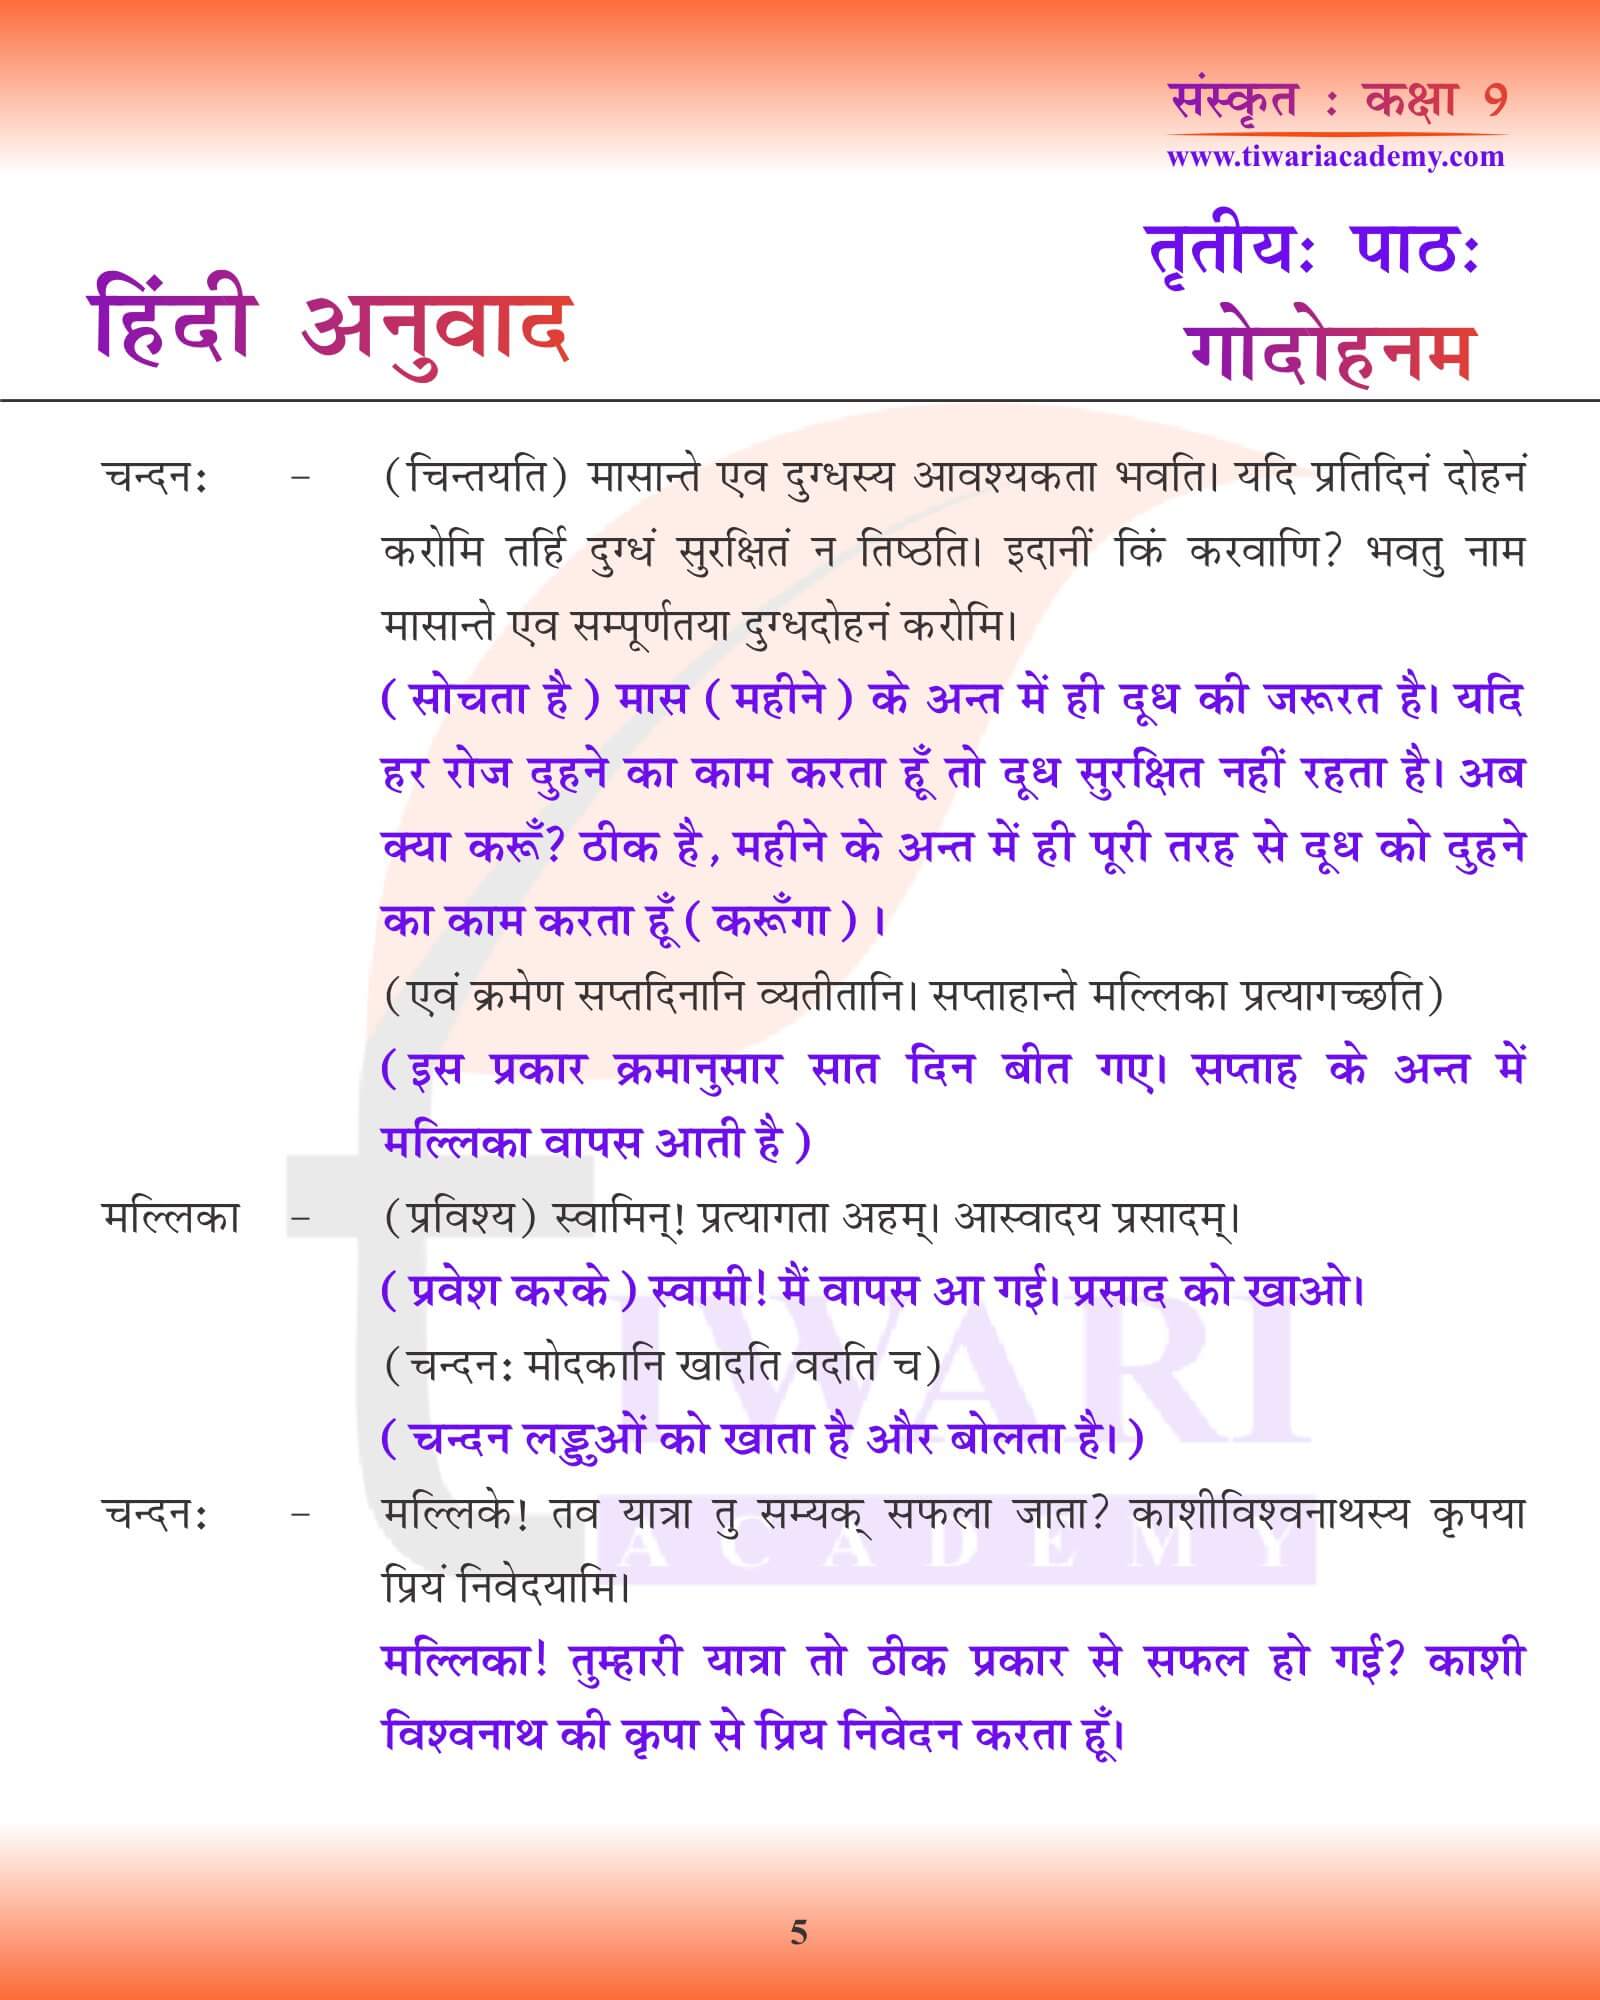 कक्षा 9 संस्कृत अध्याय 3 हिंदी ट्रांसलेशन